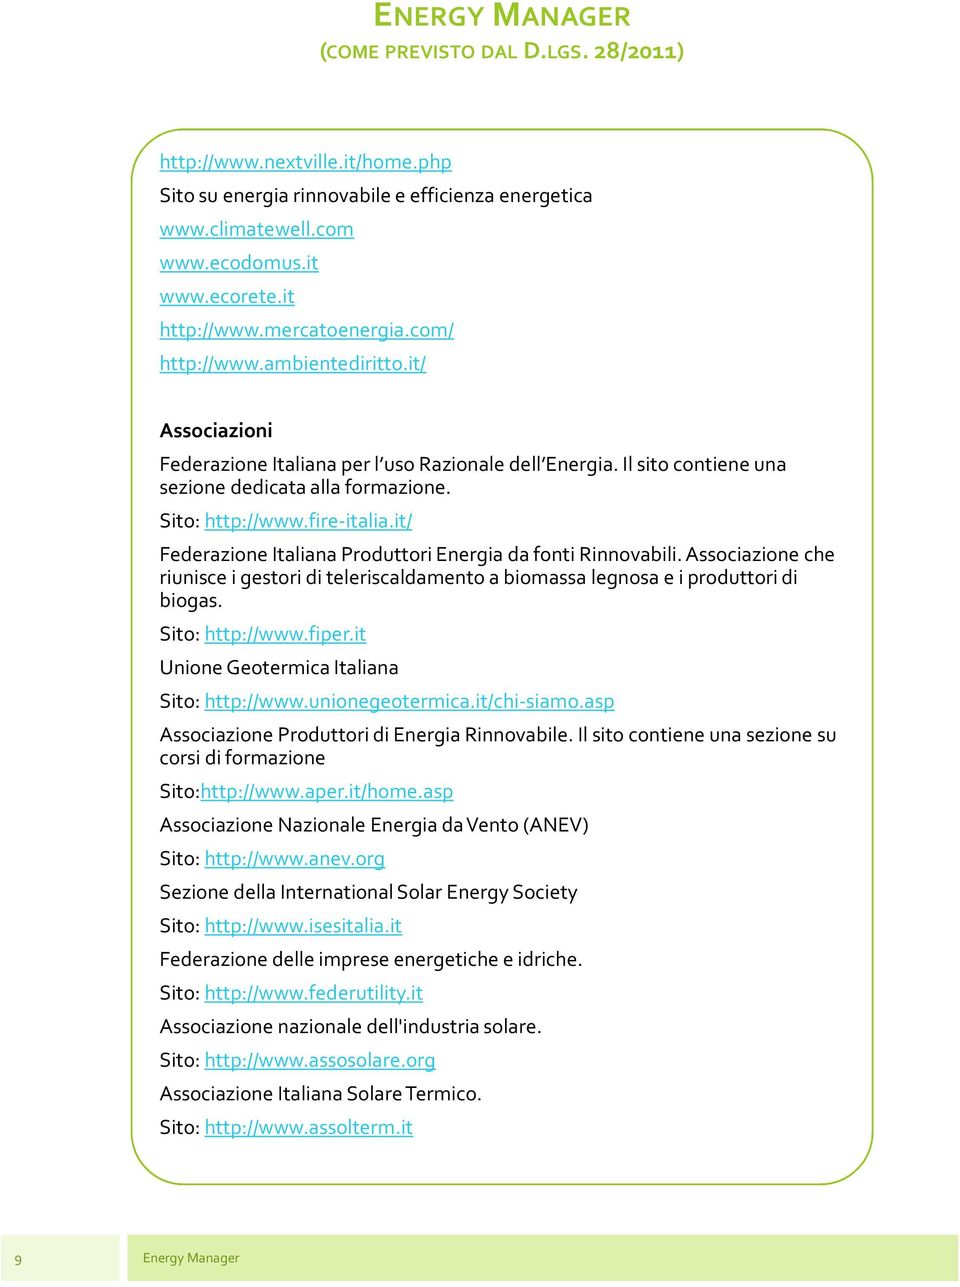 it/ Federazione Italiana Produttori Energia da fonti Rinnovabili. Associazione che riunisce i gestori di teleriscaldamento a biomassa legnosa e i produttori di biogas. Sito: http://www.fiper.